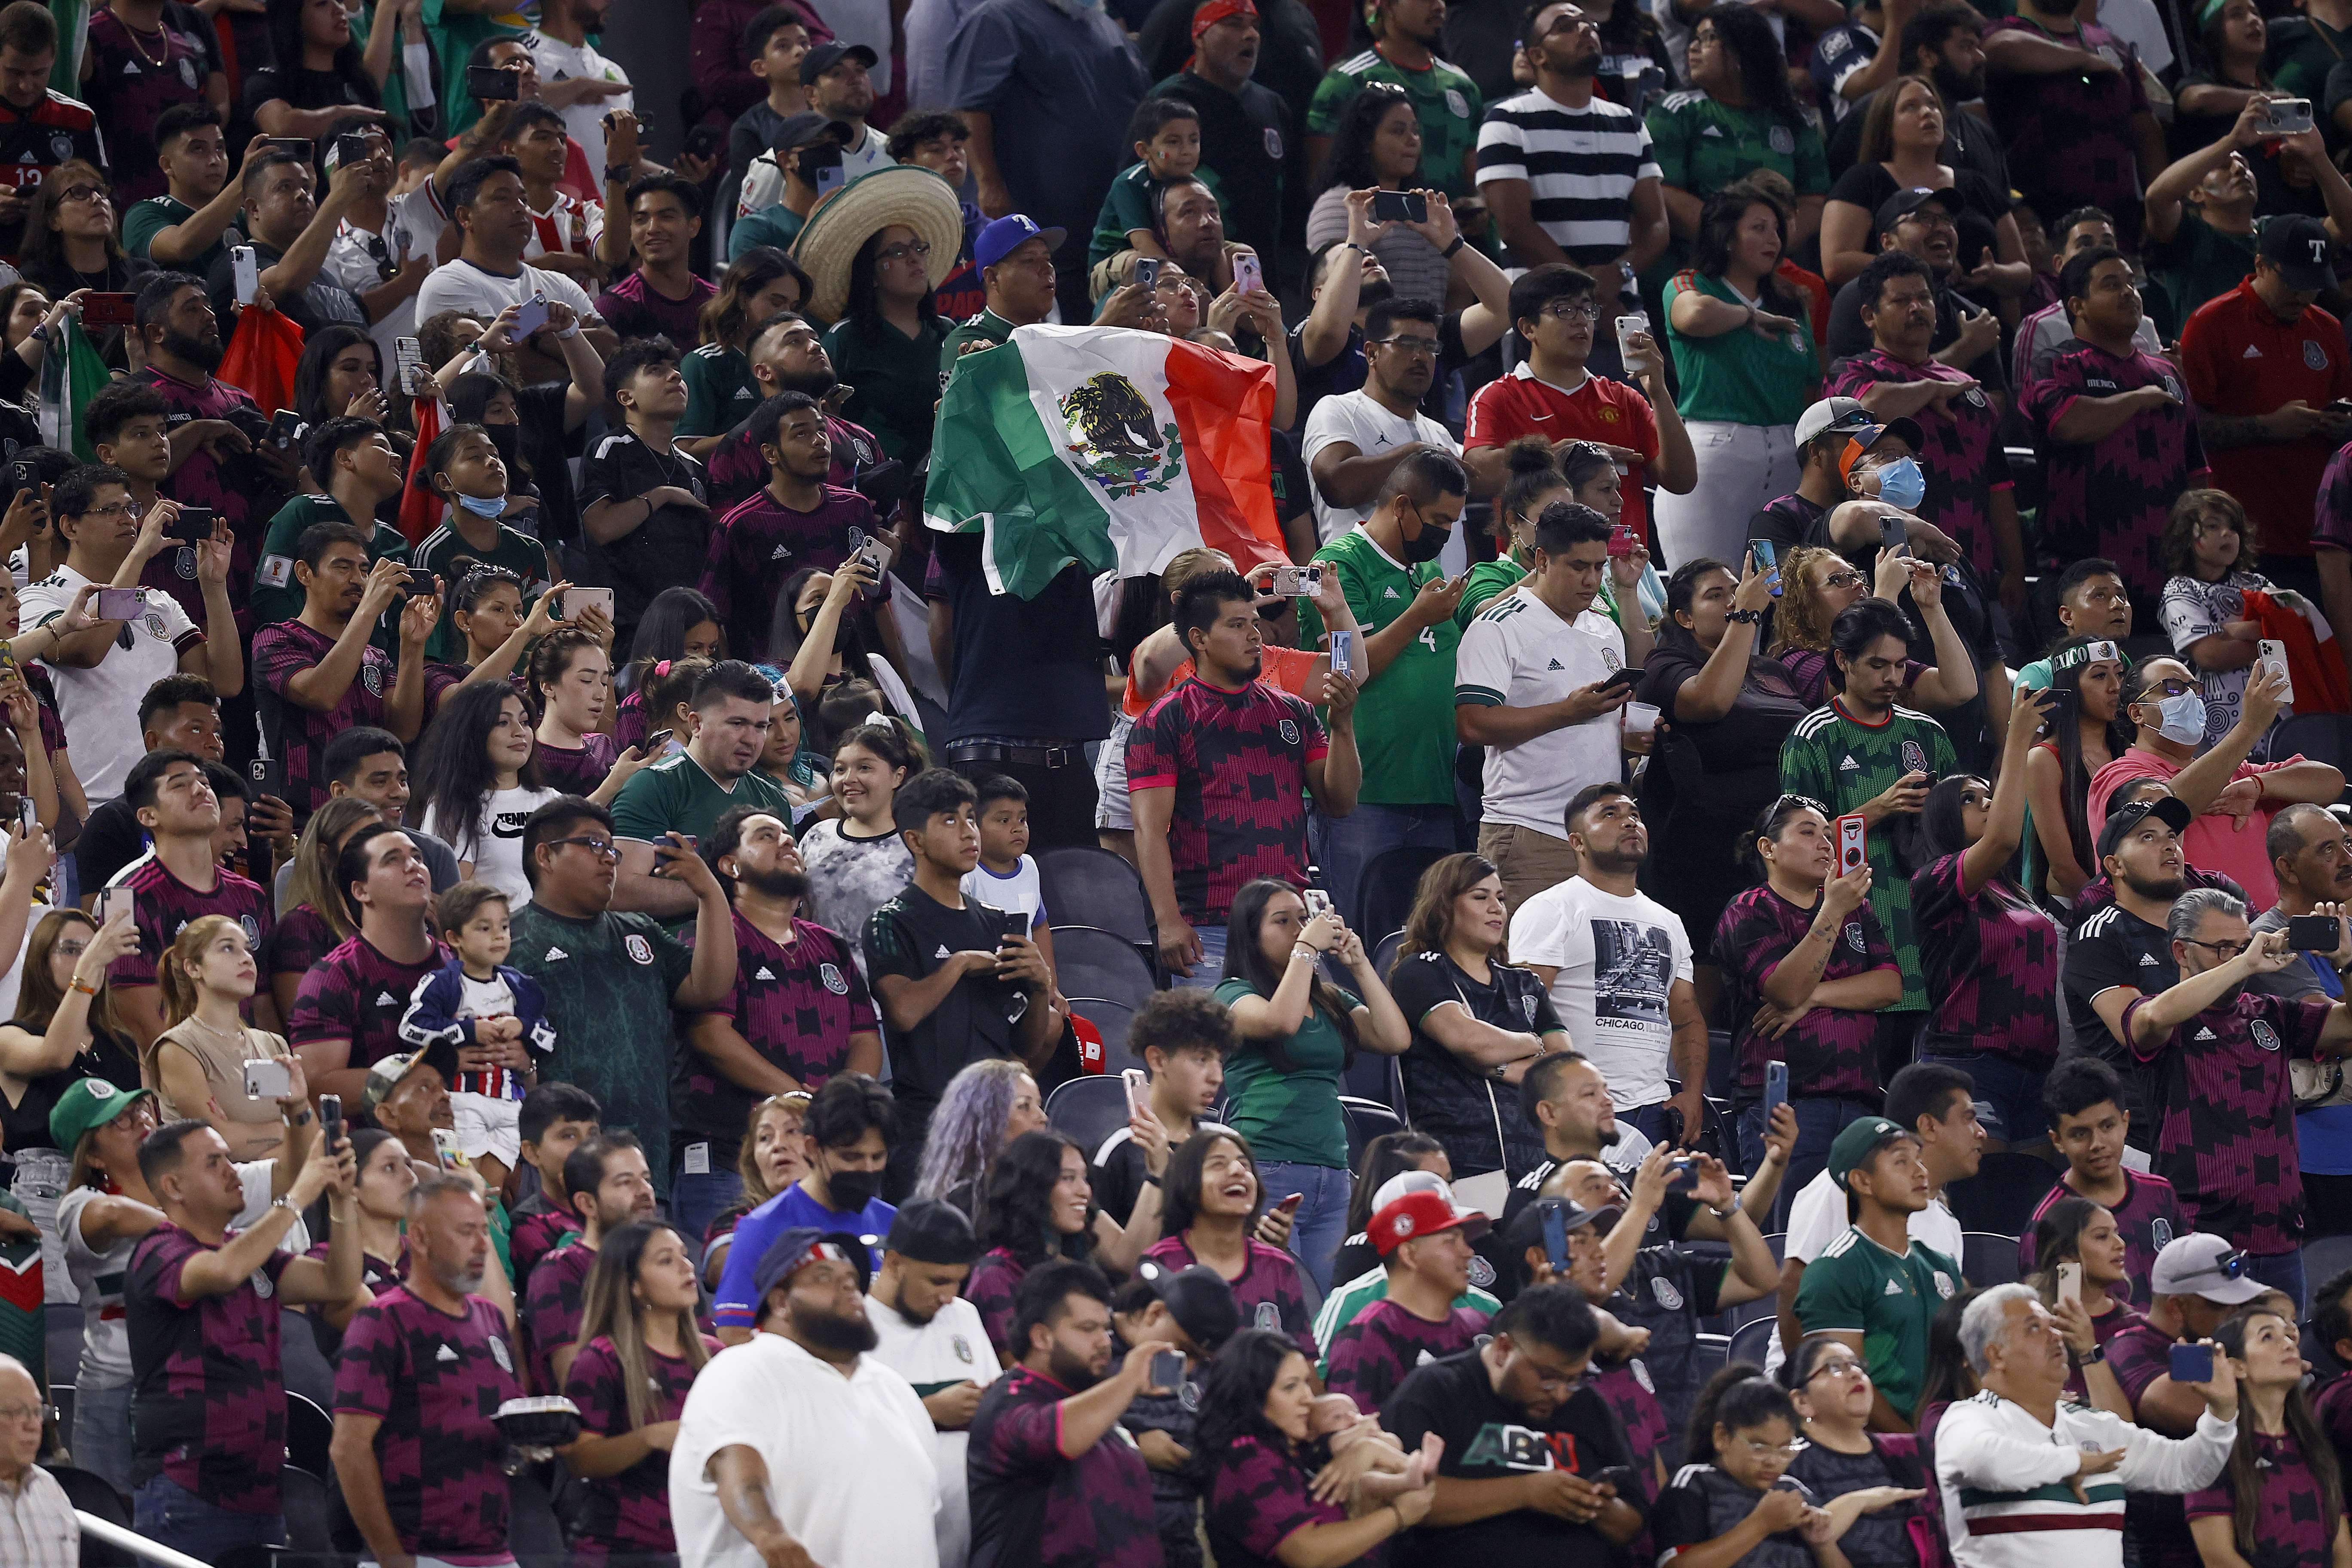 La Concacaf confirmó que habrá público para el juego entre Guatemala y México, eso sí, aseguraron que expulsarán a aficionados o suspenderán el juego si hay gritos homofóbicos. Foto Prensa Libre: AFP.